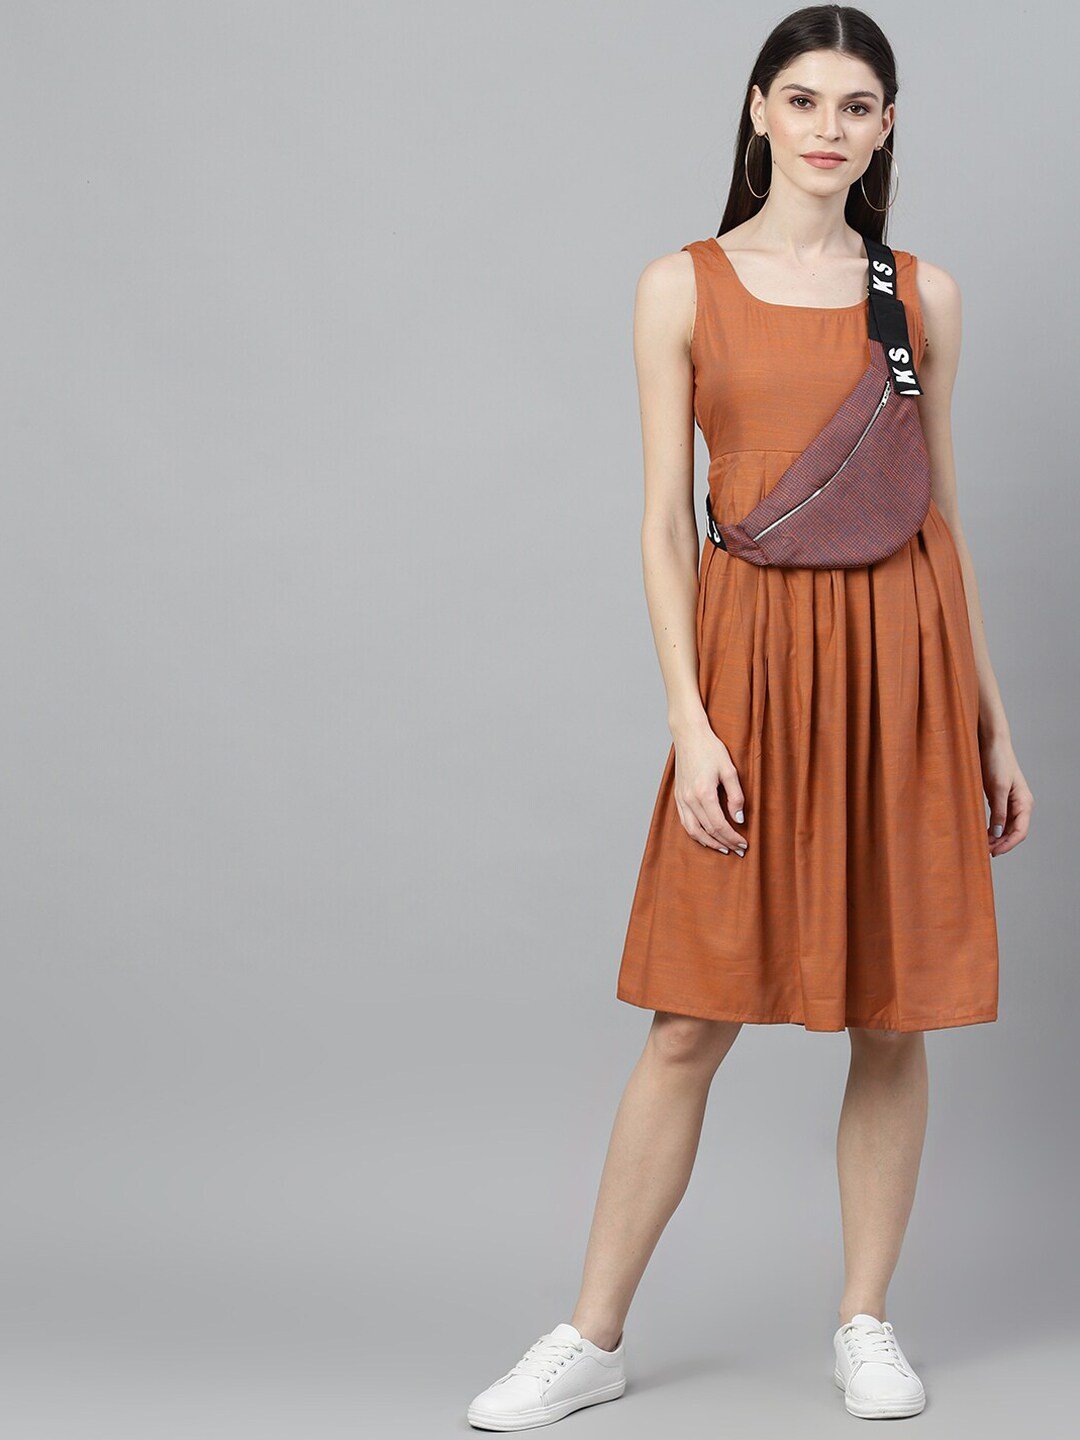 Women's  Orange Solid A-Line Dress - AKS